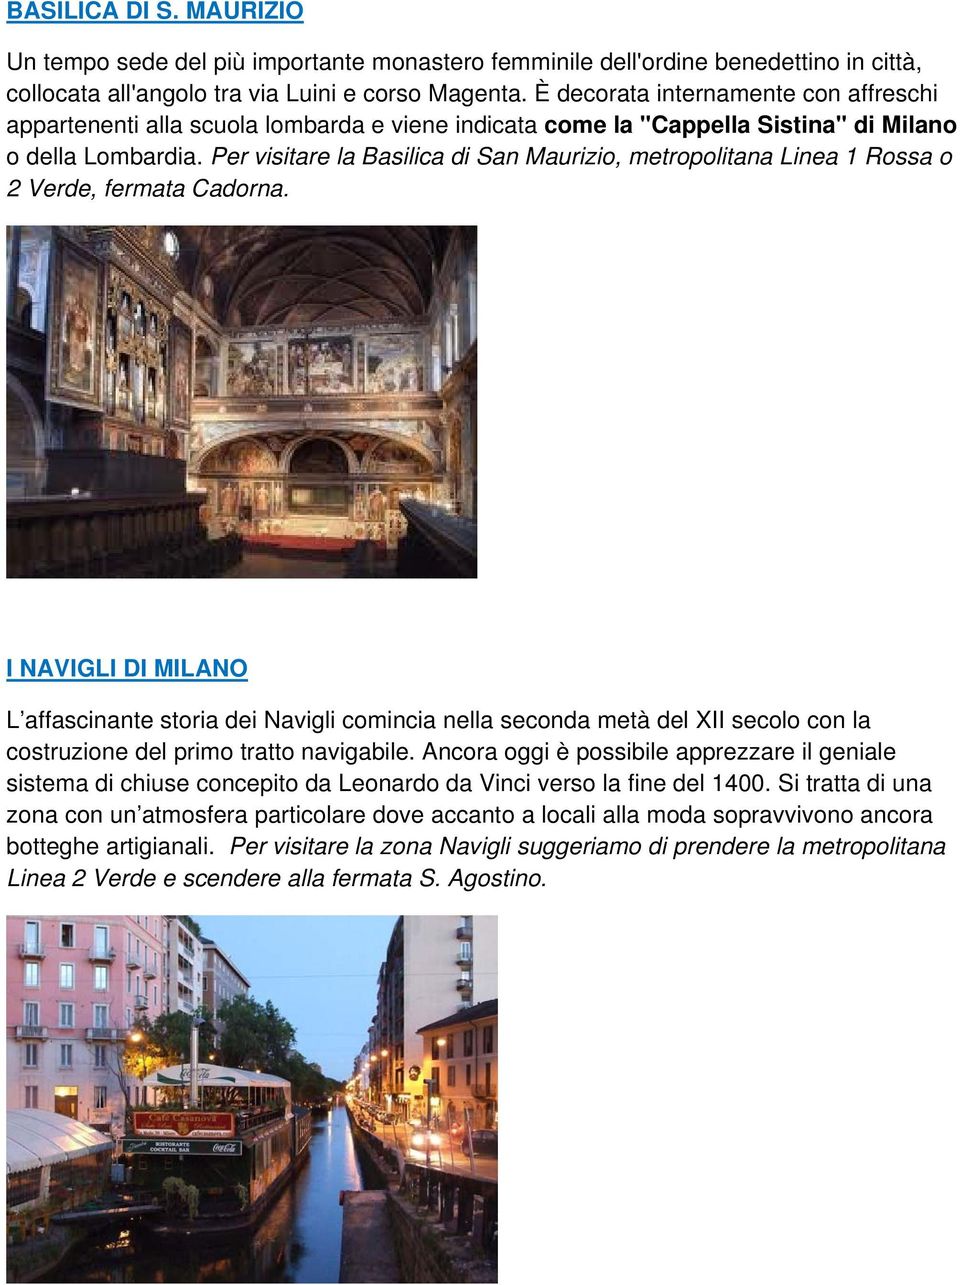 Per visitare la Basilica di San Maurizio, metropolitana Linea 1 Rossa o 2 Verde, fermata Cadorna.